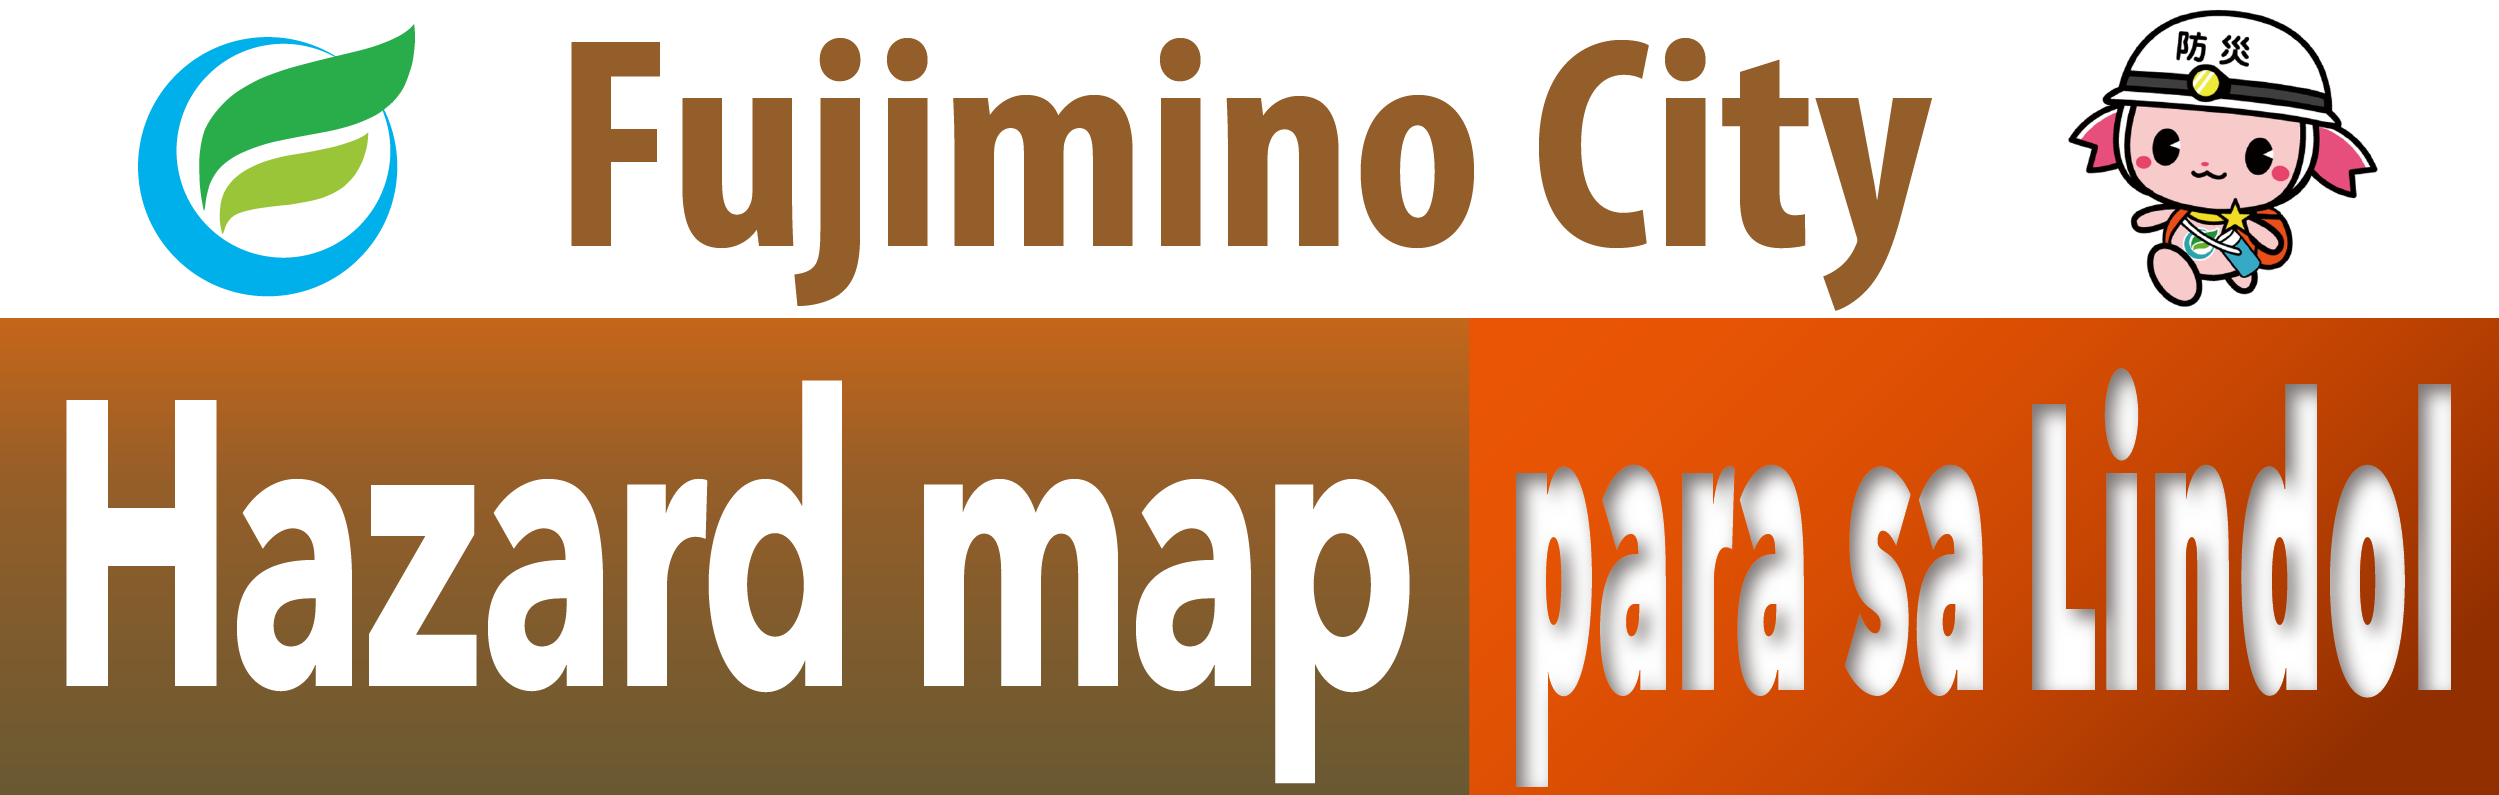 Fujimino City Hazard map para sa Lindol